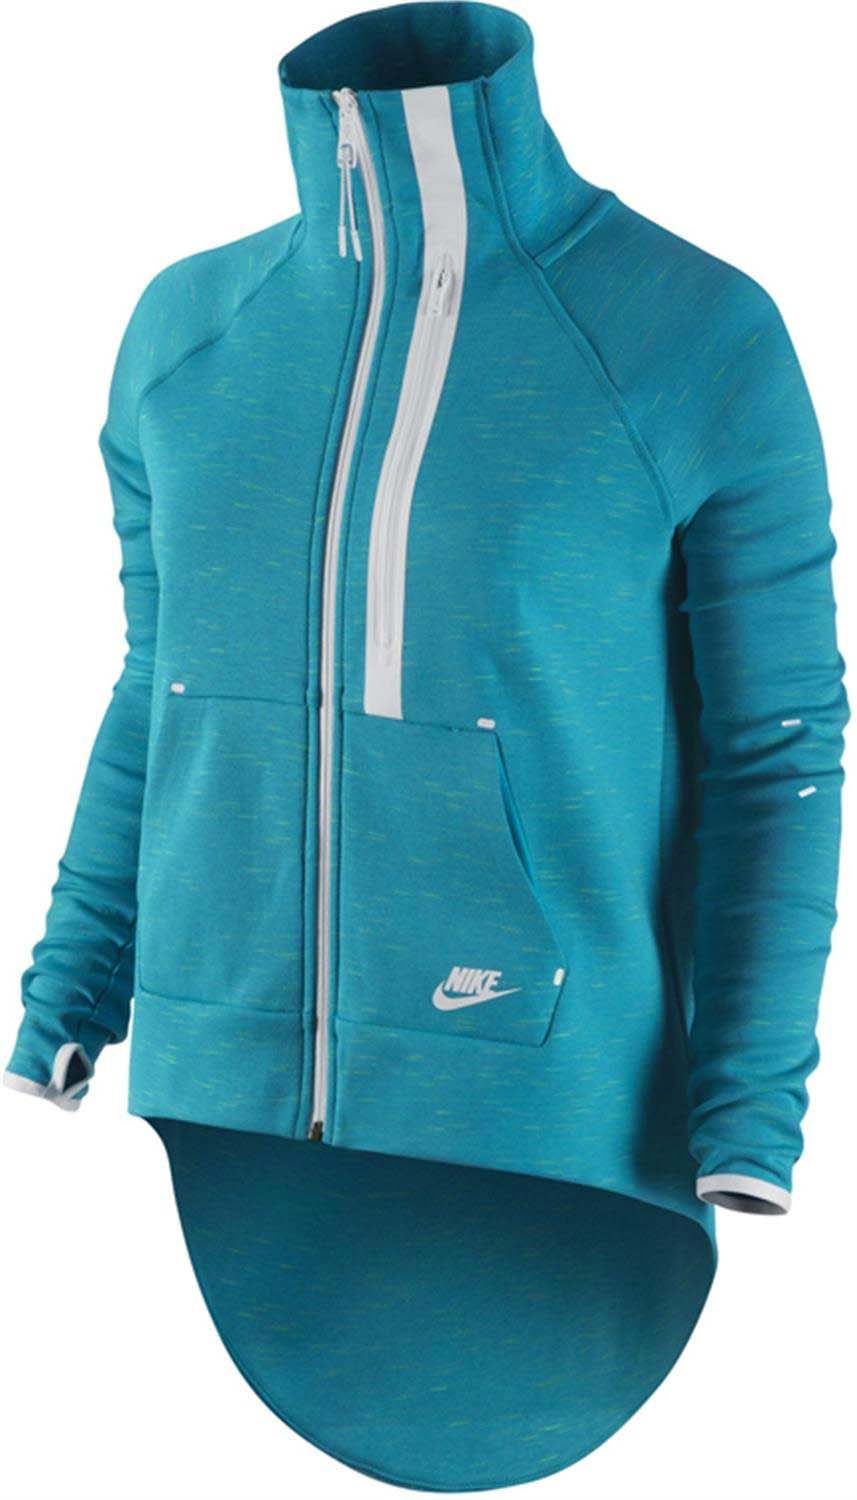 Nike Women's Tech Fleece Moto Cape Jacket - image 1 of 2